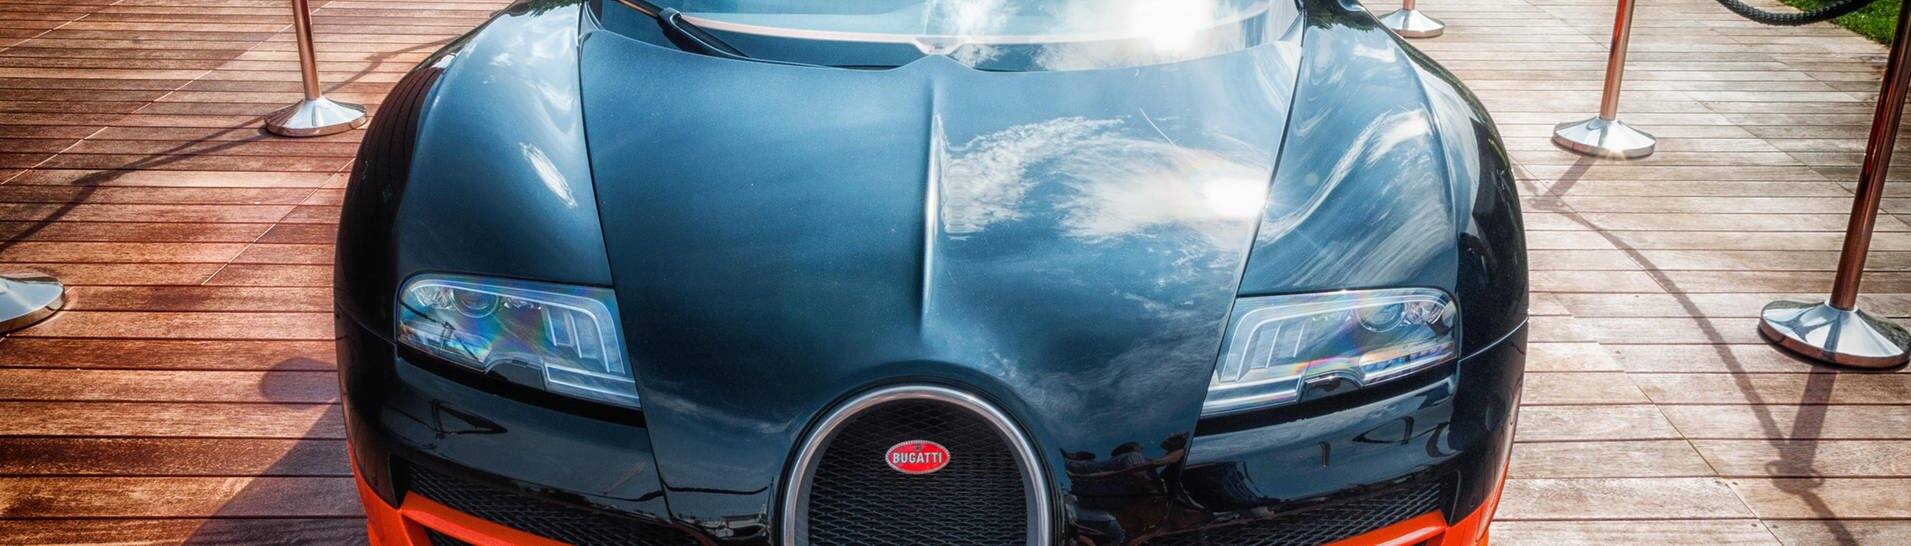 Bugatti Veyron (Symbolbild) (Foto: dpa Bildfunk, picture alliance / Zoonar | massimo campanari (Symbolbild))